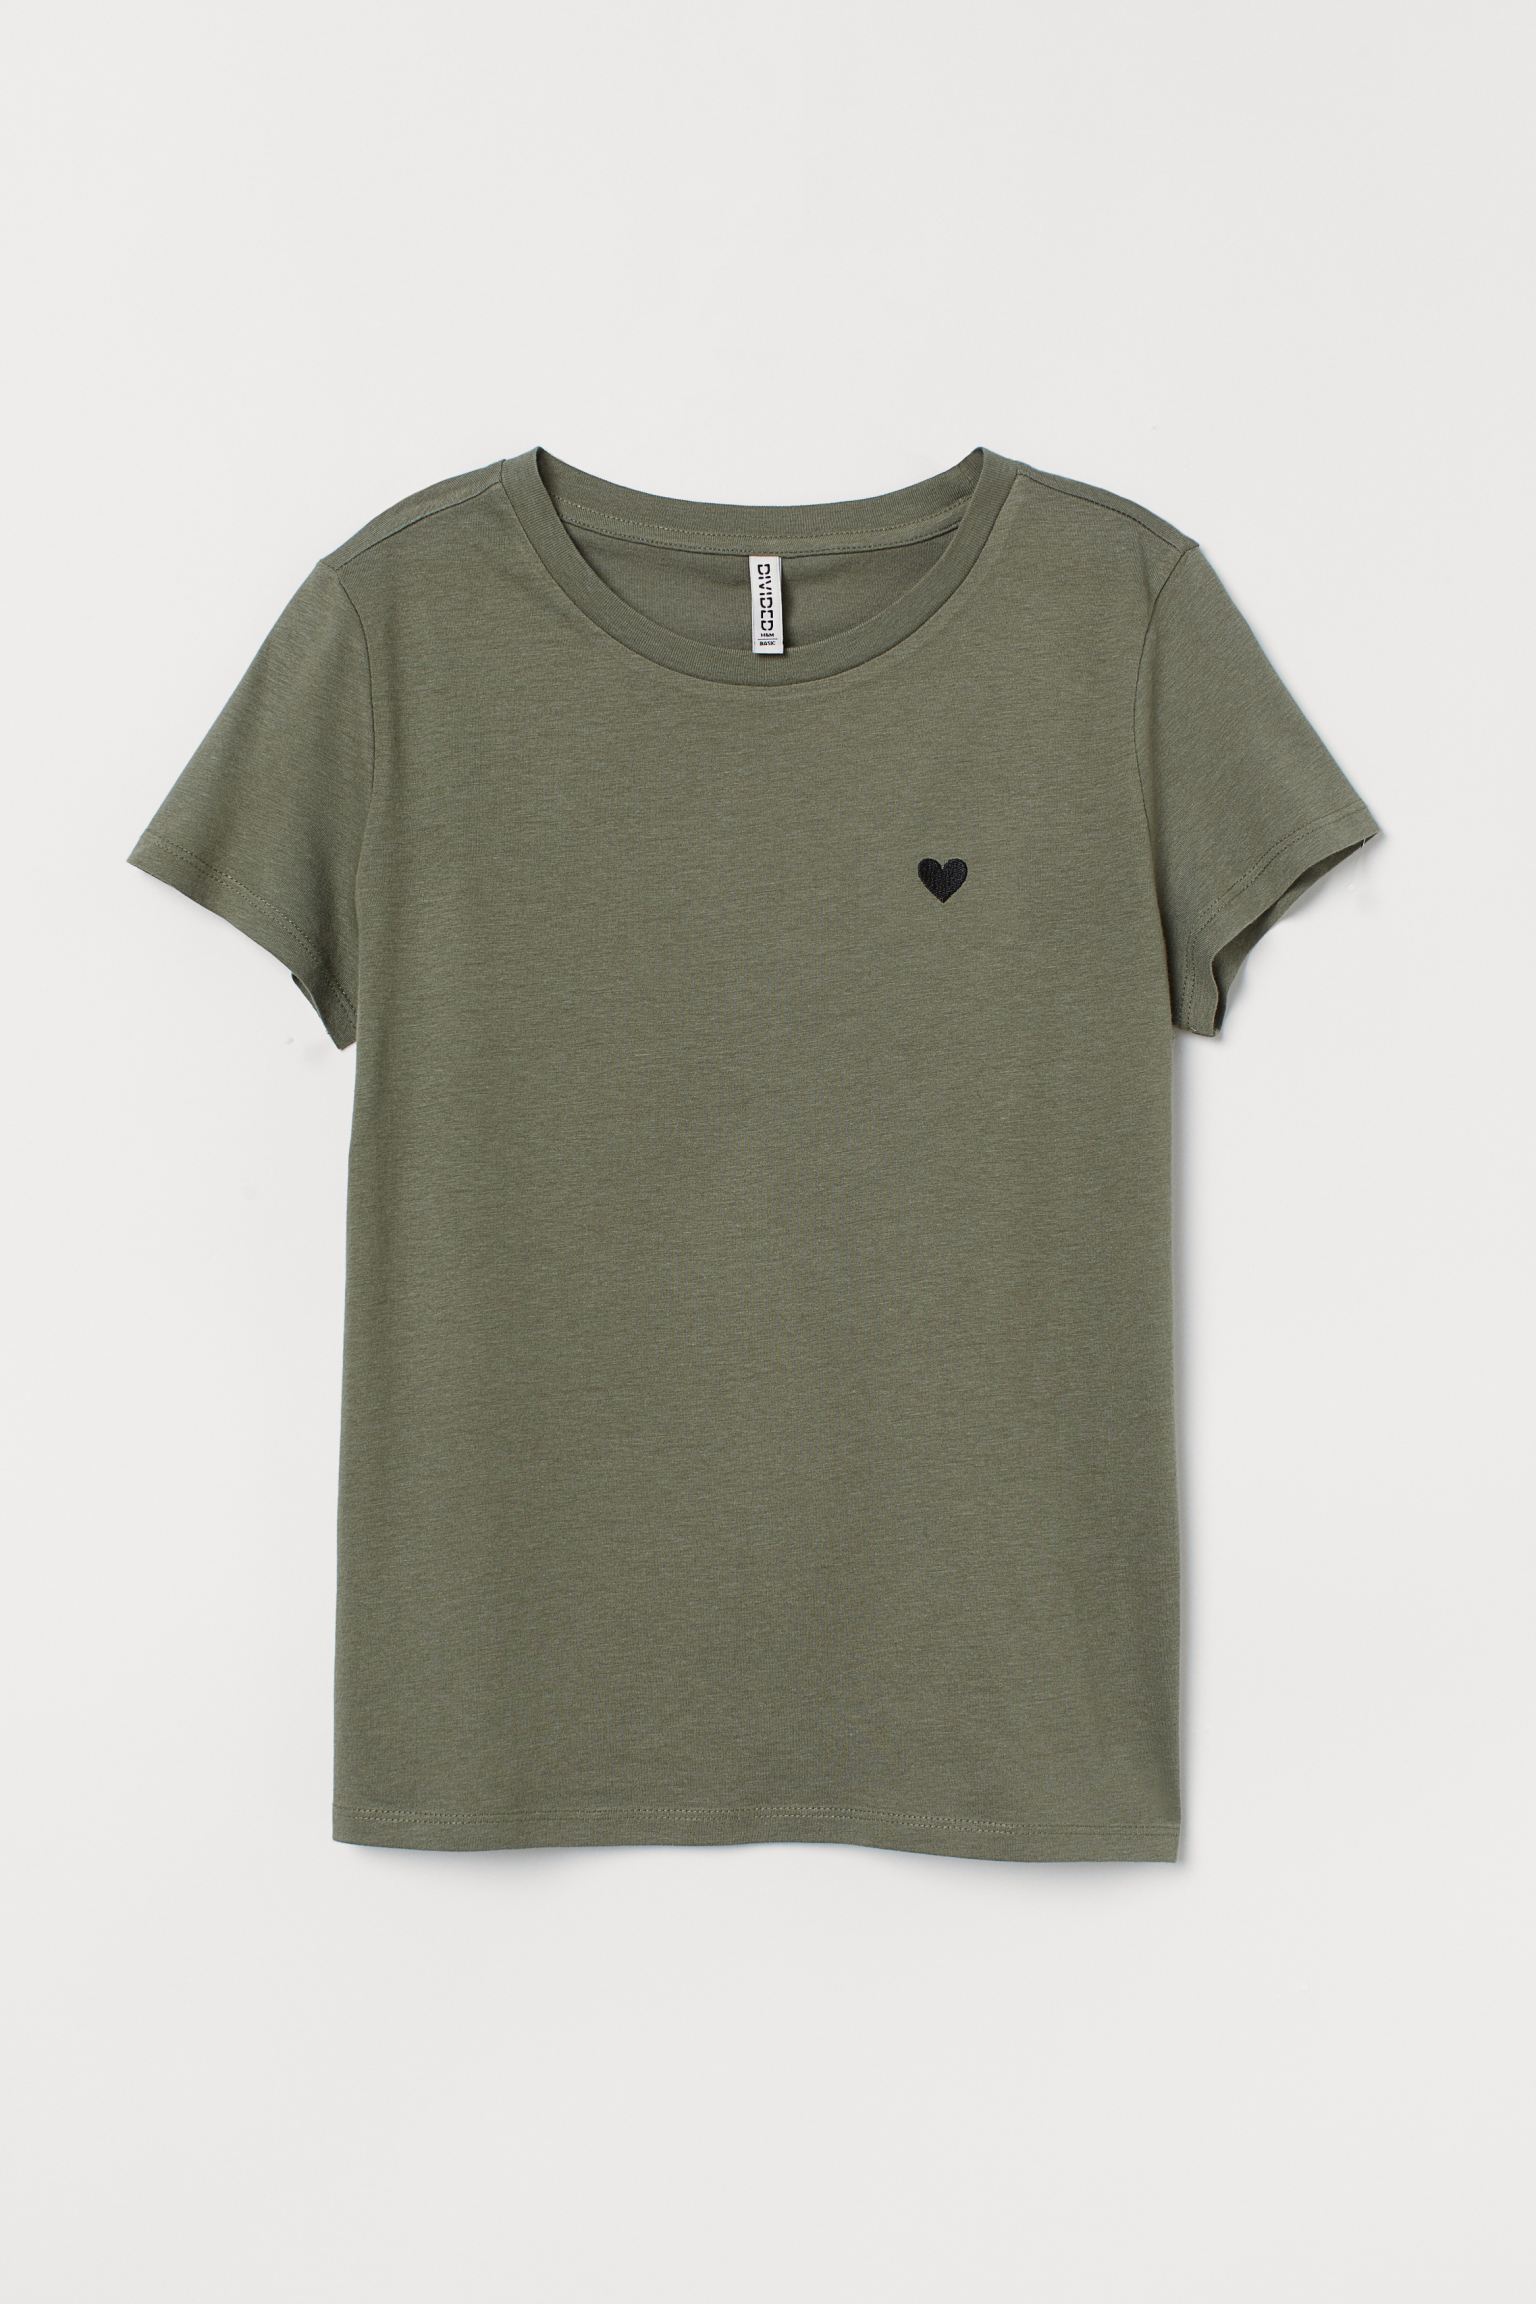 تی شرت دخترانه 35222 سایز 1.5 تا 11 سال کد 12 مارک H&M